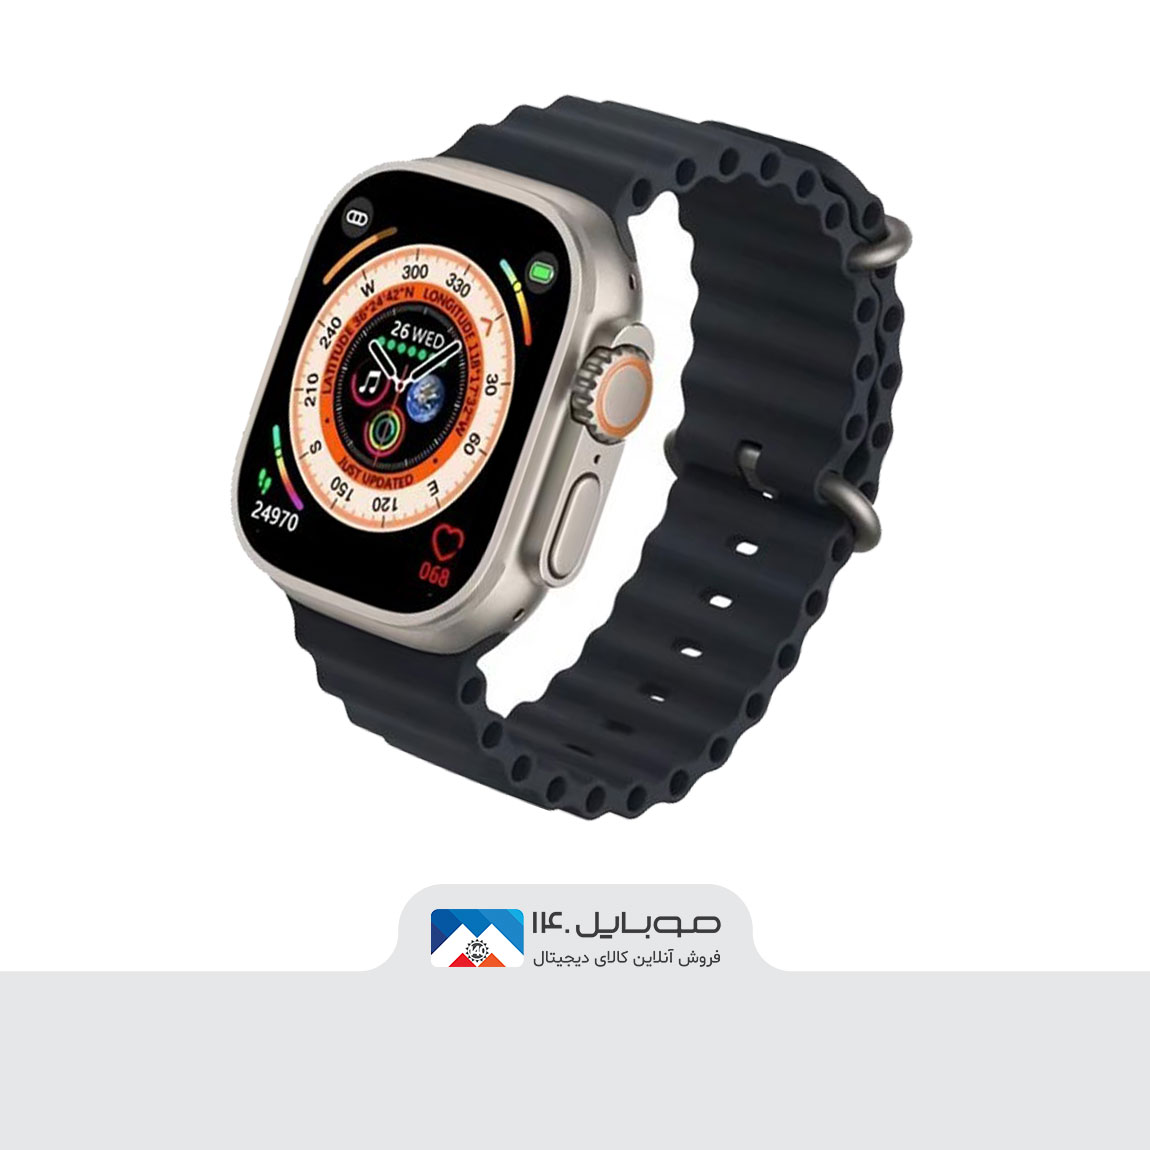 Blulory Ultra Pro Smart Watch 1